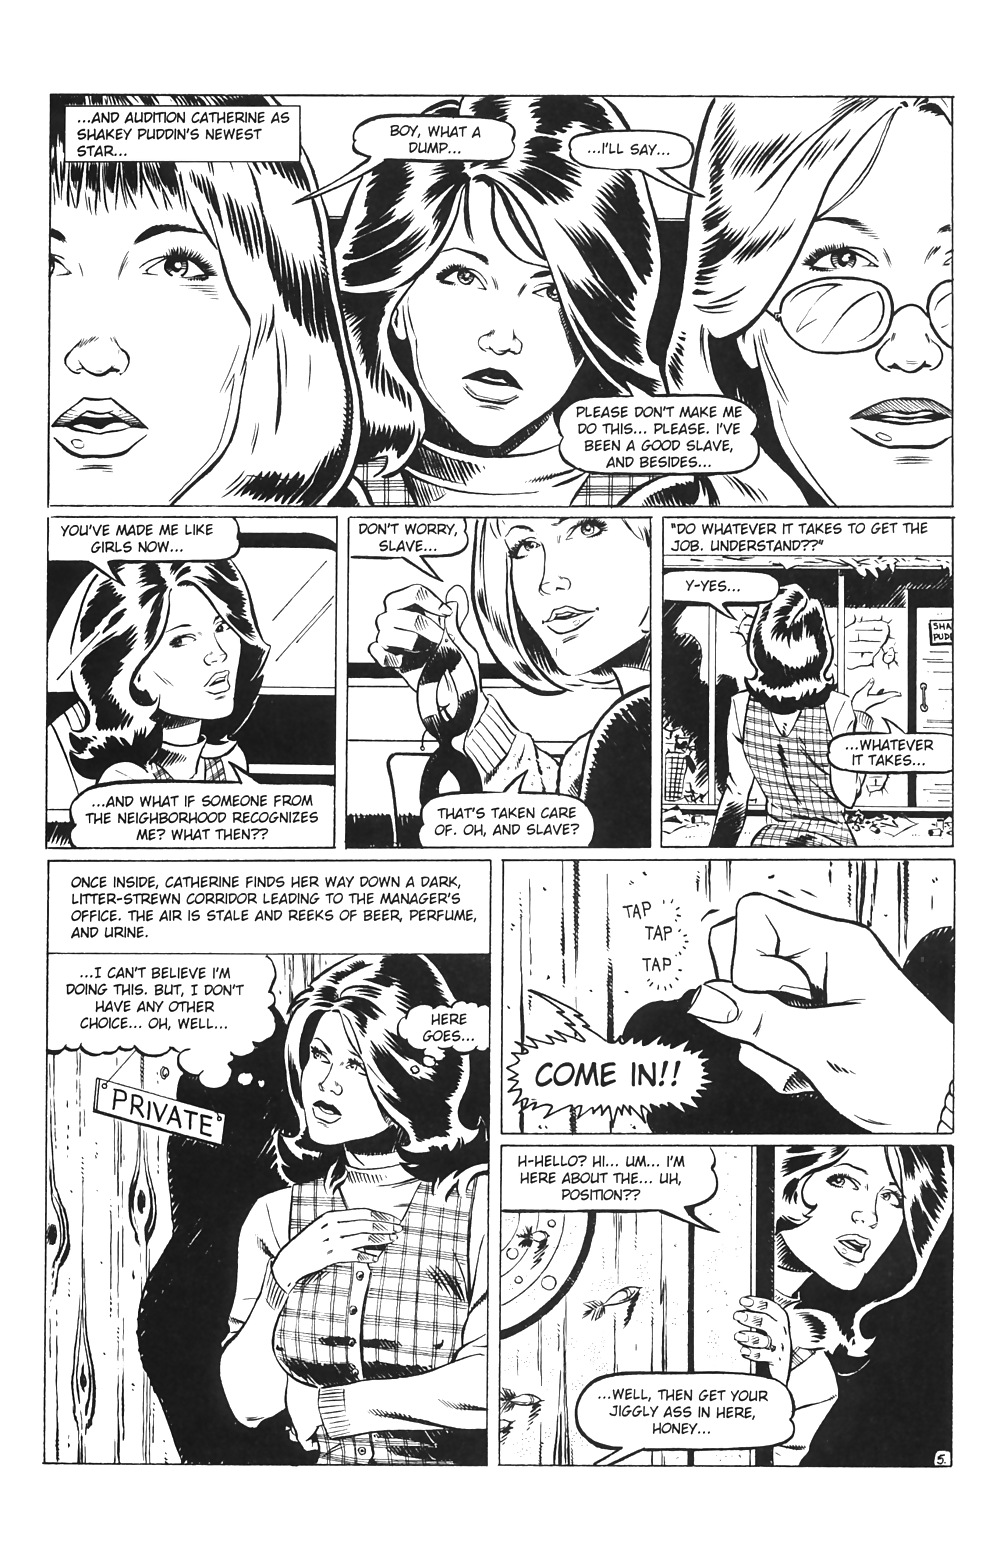 Hausfrauen Am Spiel # 03 - Eros-Comics Von Rebecca - Oktober 2001 #25713932